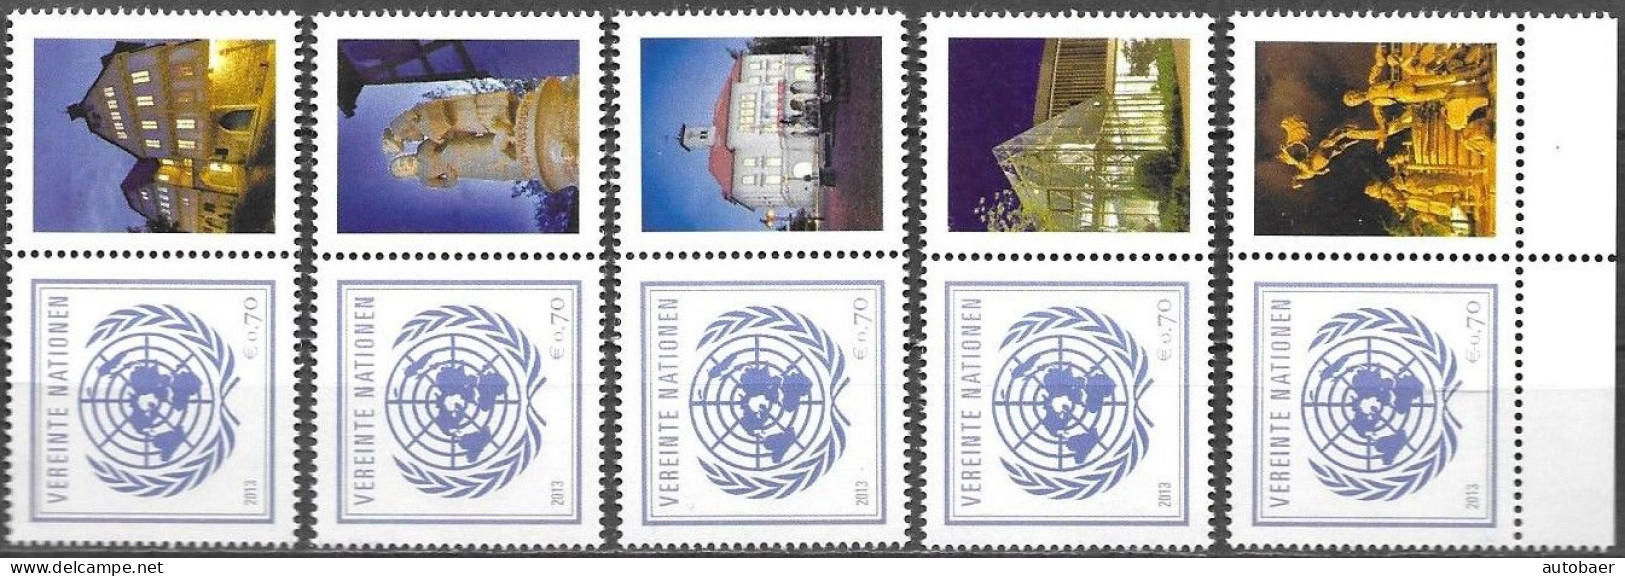 United Nations UNO UN Vereinte Nationen Vienna Wien 2013 Stamp Fair Sindelfingen Mi. 797 X5 MNH ** Neuf - Nuevos